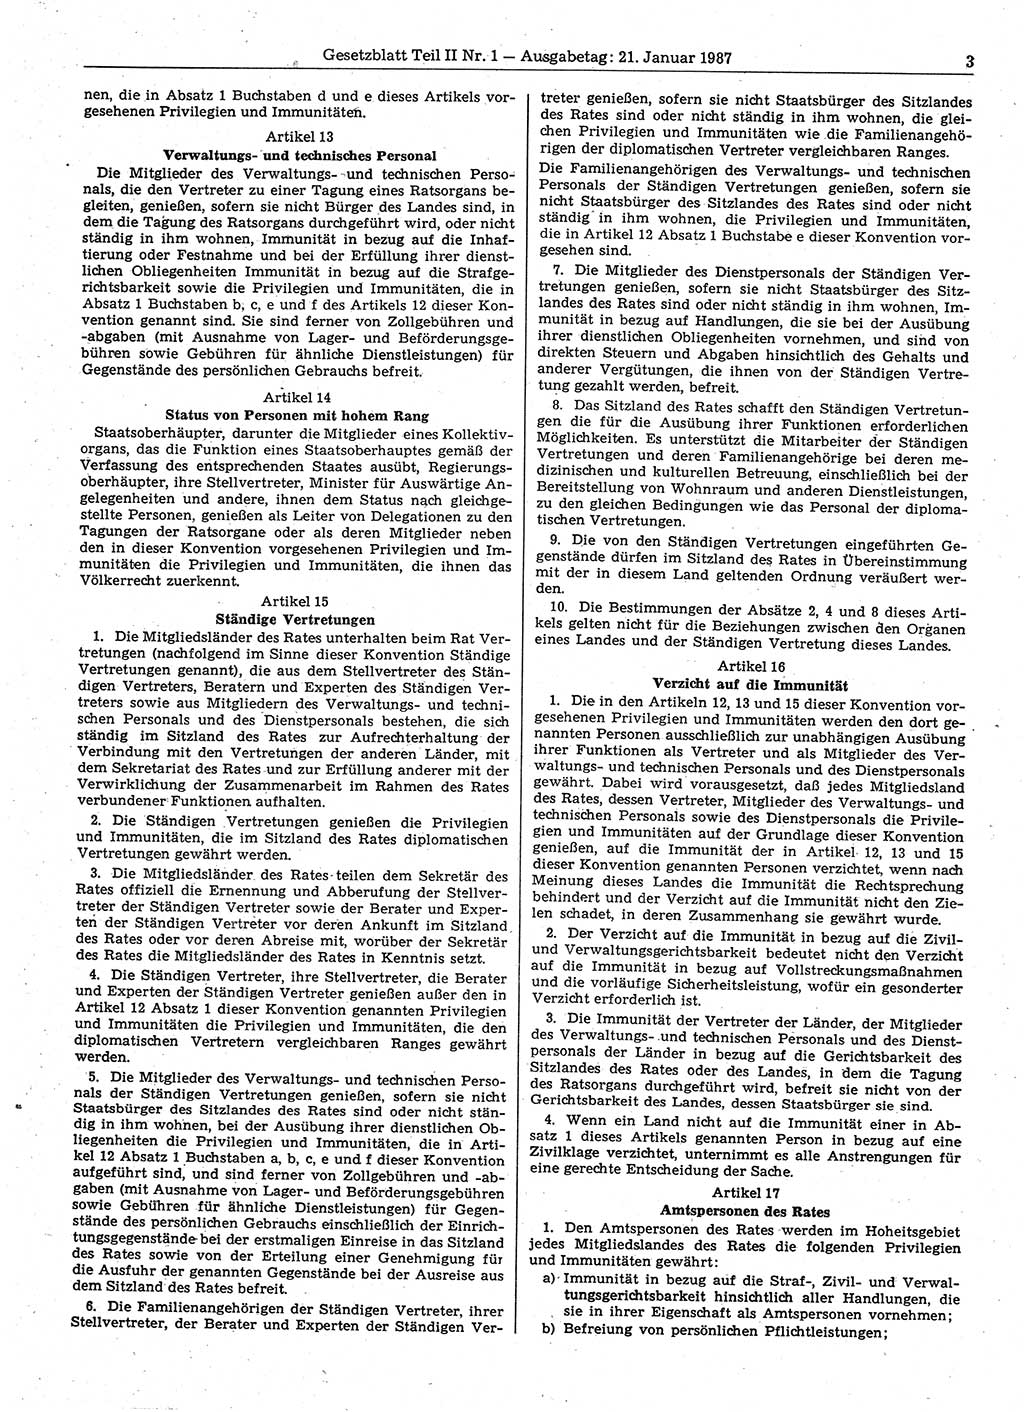 Gesetzblatt (GBl.) der Deutschen Demokratischen Republik (DDR) Teil ⅠⅠ 1987, Seite 3 (GBl. DDR ⅠⅠ 1987, S. 3)